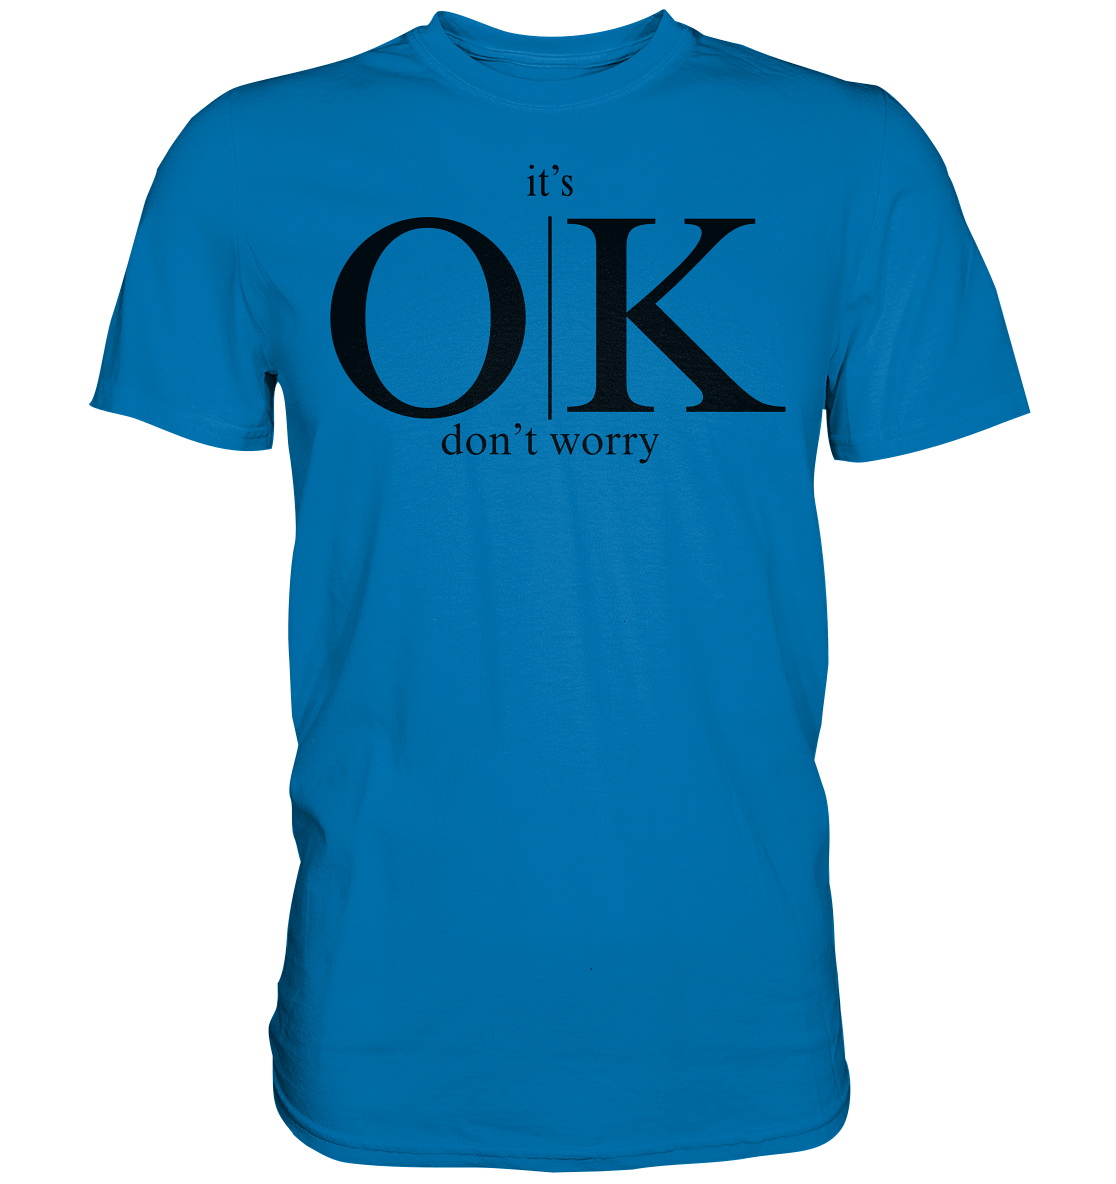 Herren Bio-Baumwoll T-Shirt "it's OK dont't worry"